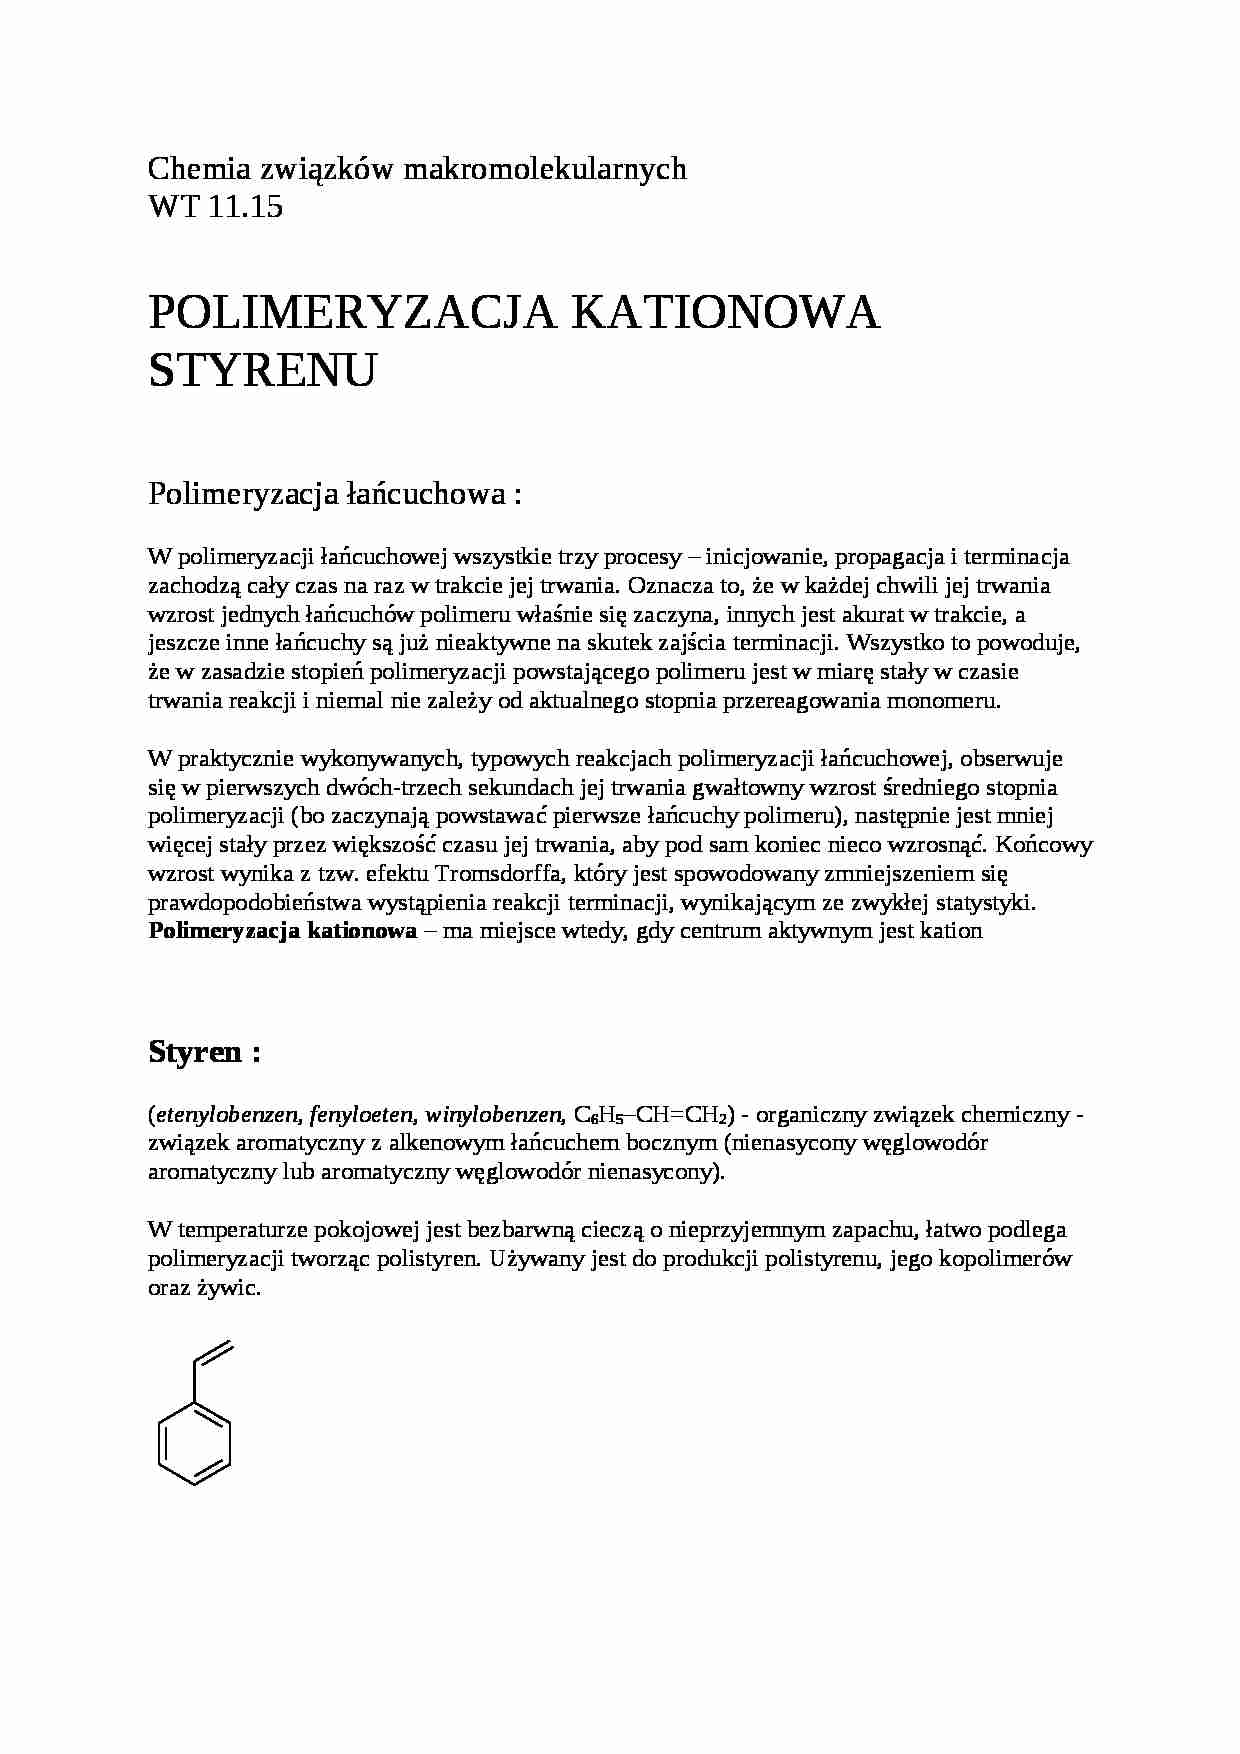 Polimeryzacja kationowa styrenu - omówienie  - strona 1